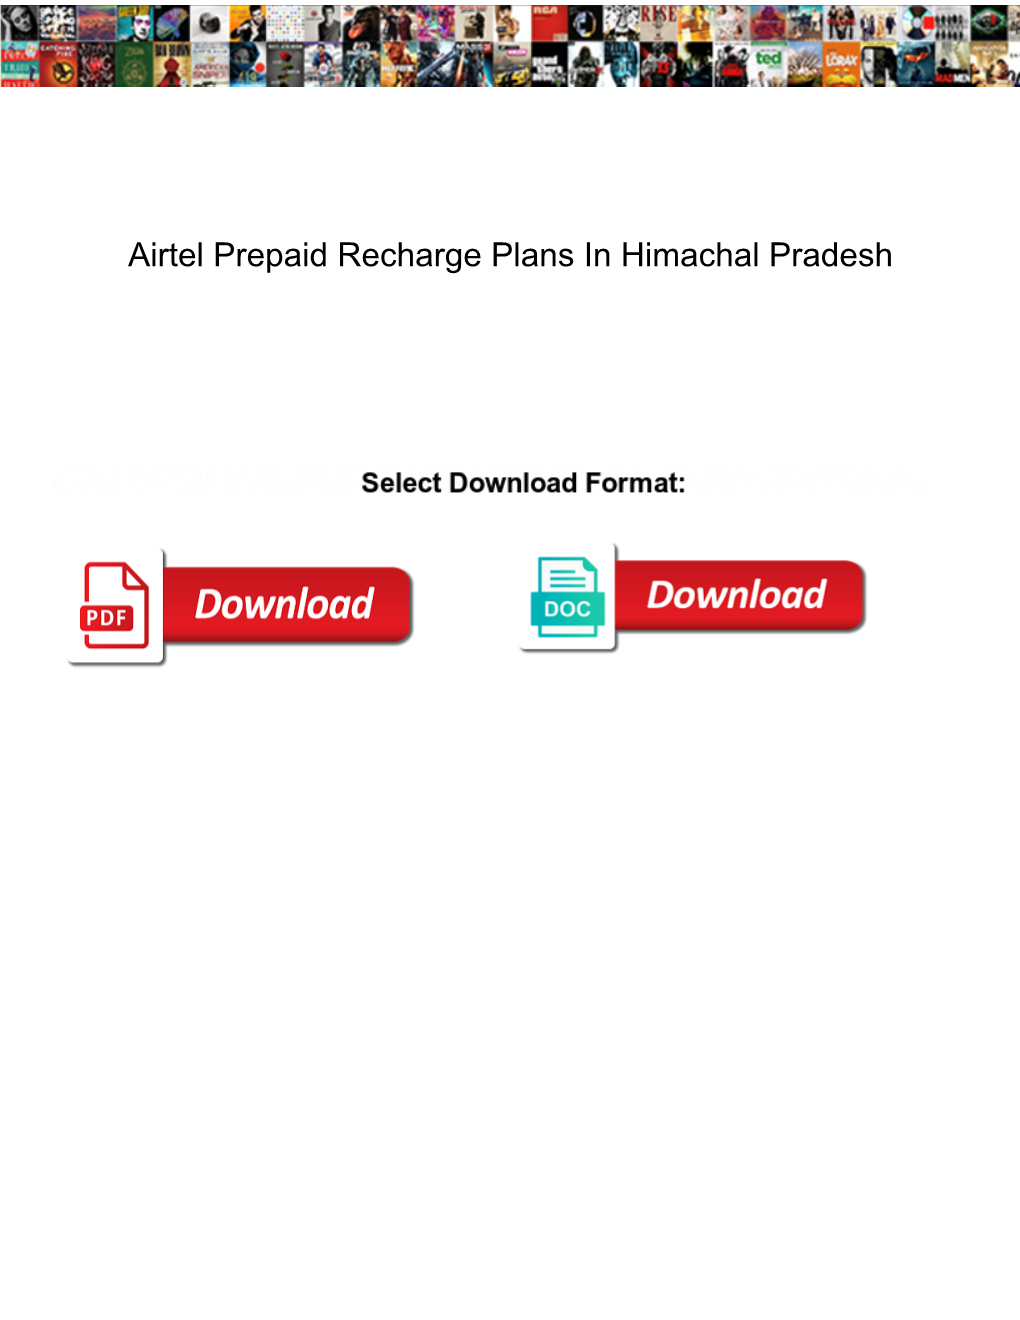 Airtel Prepaid Recharge Plans in Himachal Pradesh